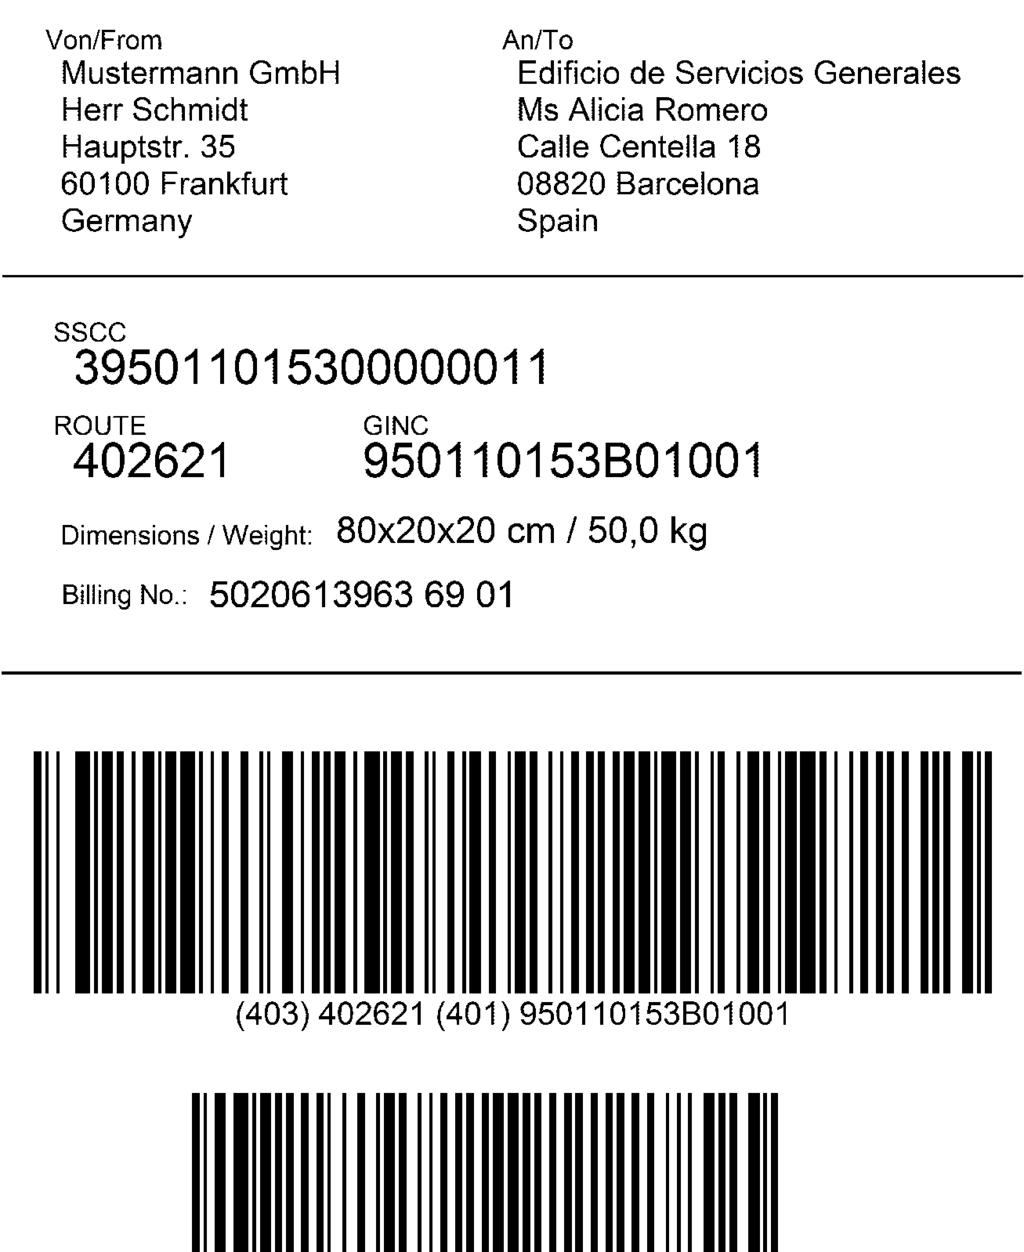 Dieses Beispiel zeigt ein Etikett, das ausschließlich einen SSCC enthält.